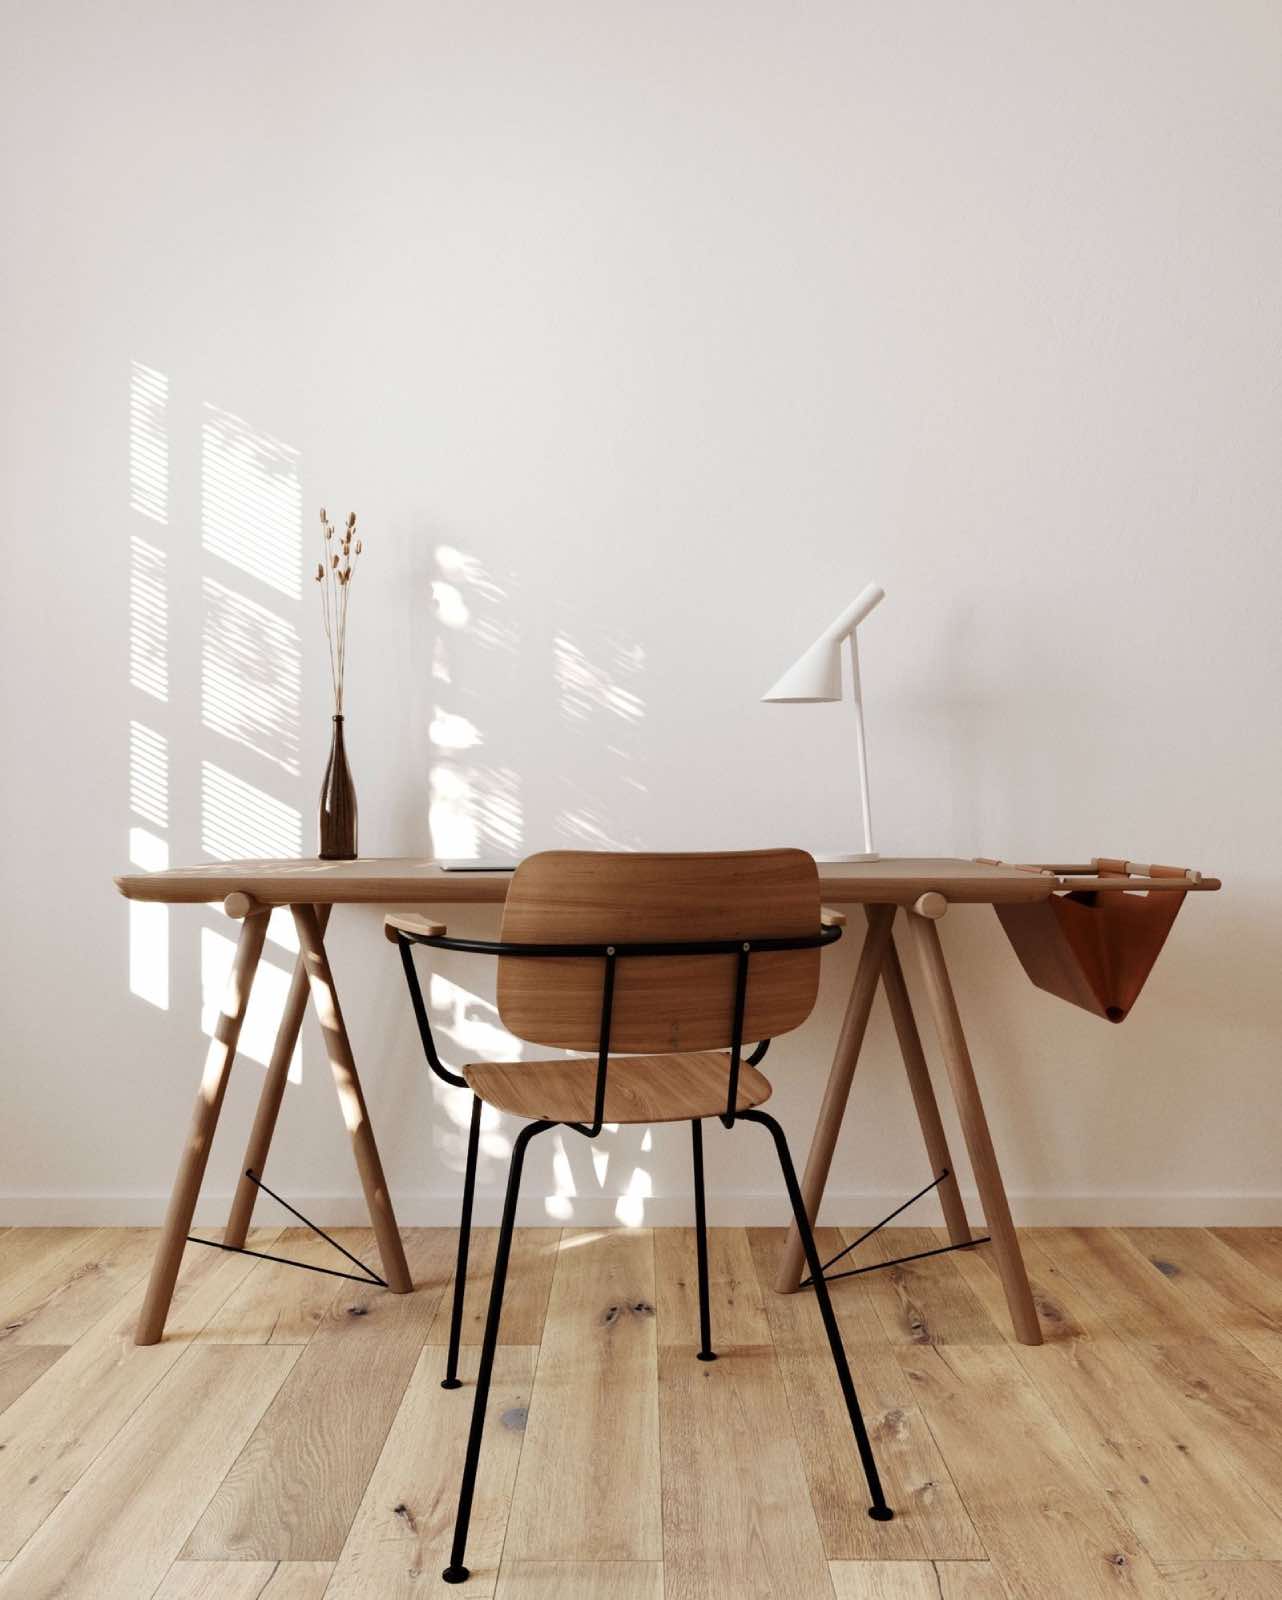 escritorio de madera sostenible con silla, muebles de madera atemporales